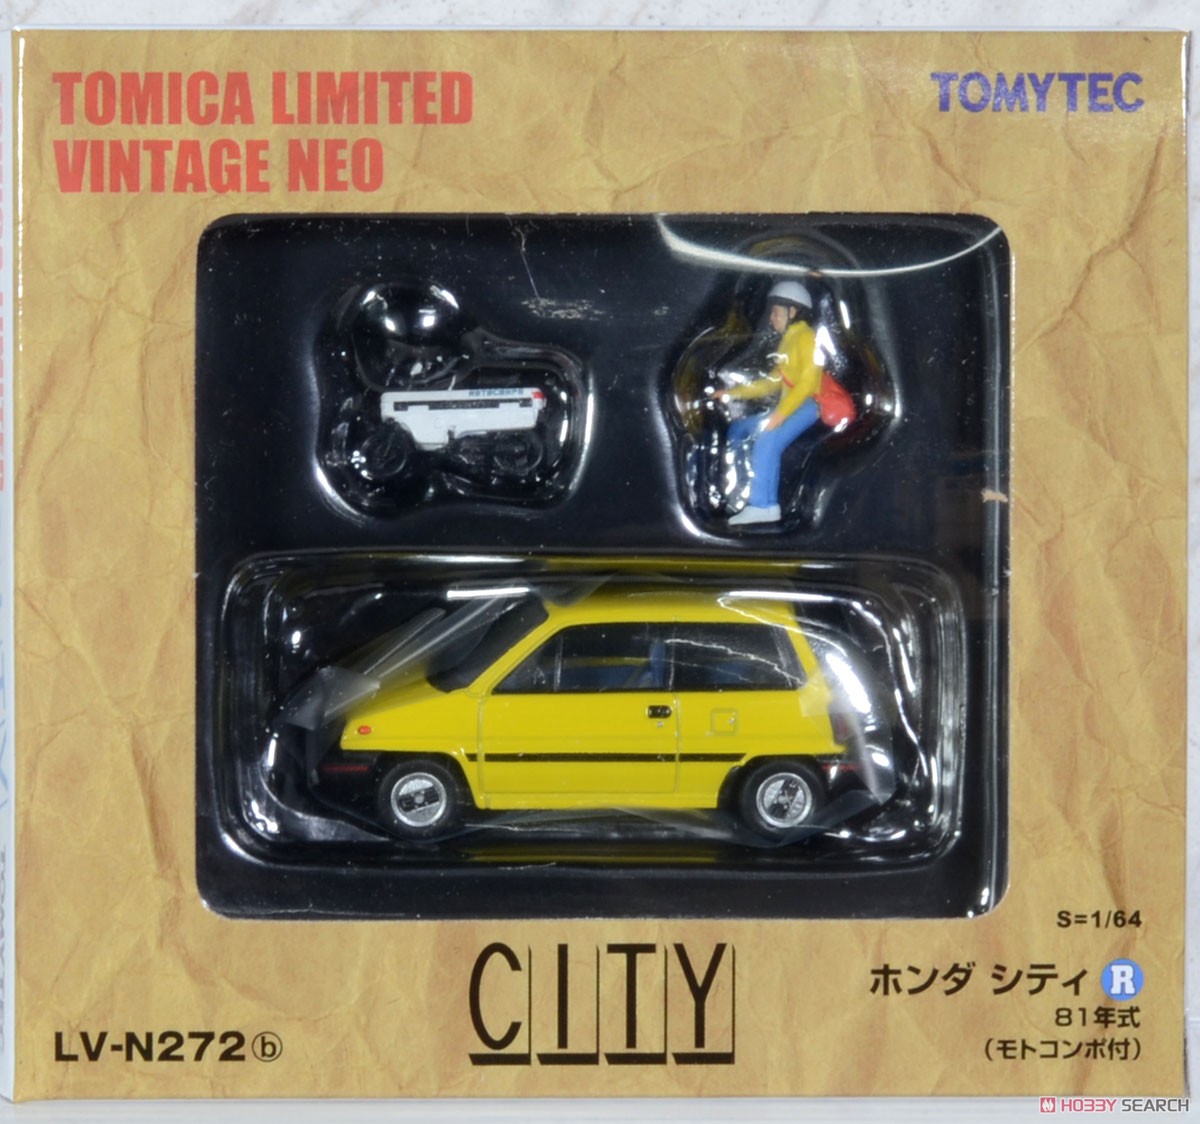 TLV-N272b Honda City R (Yellow) 1981 w/Motocompo (Diecast Car) Package1